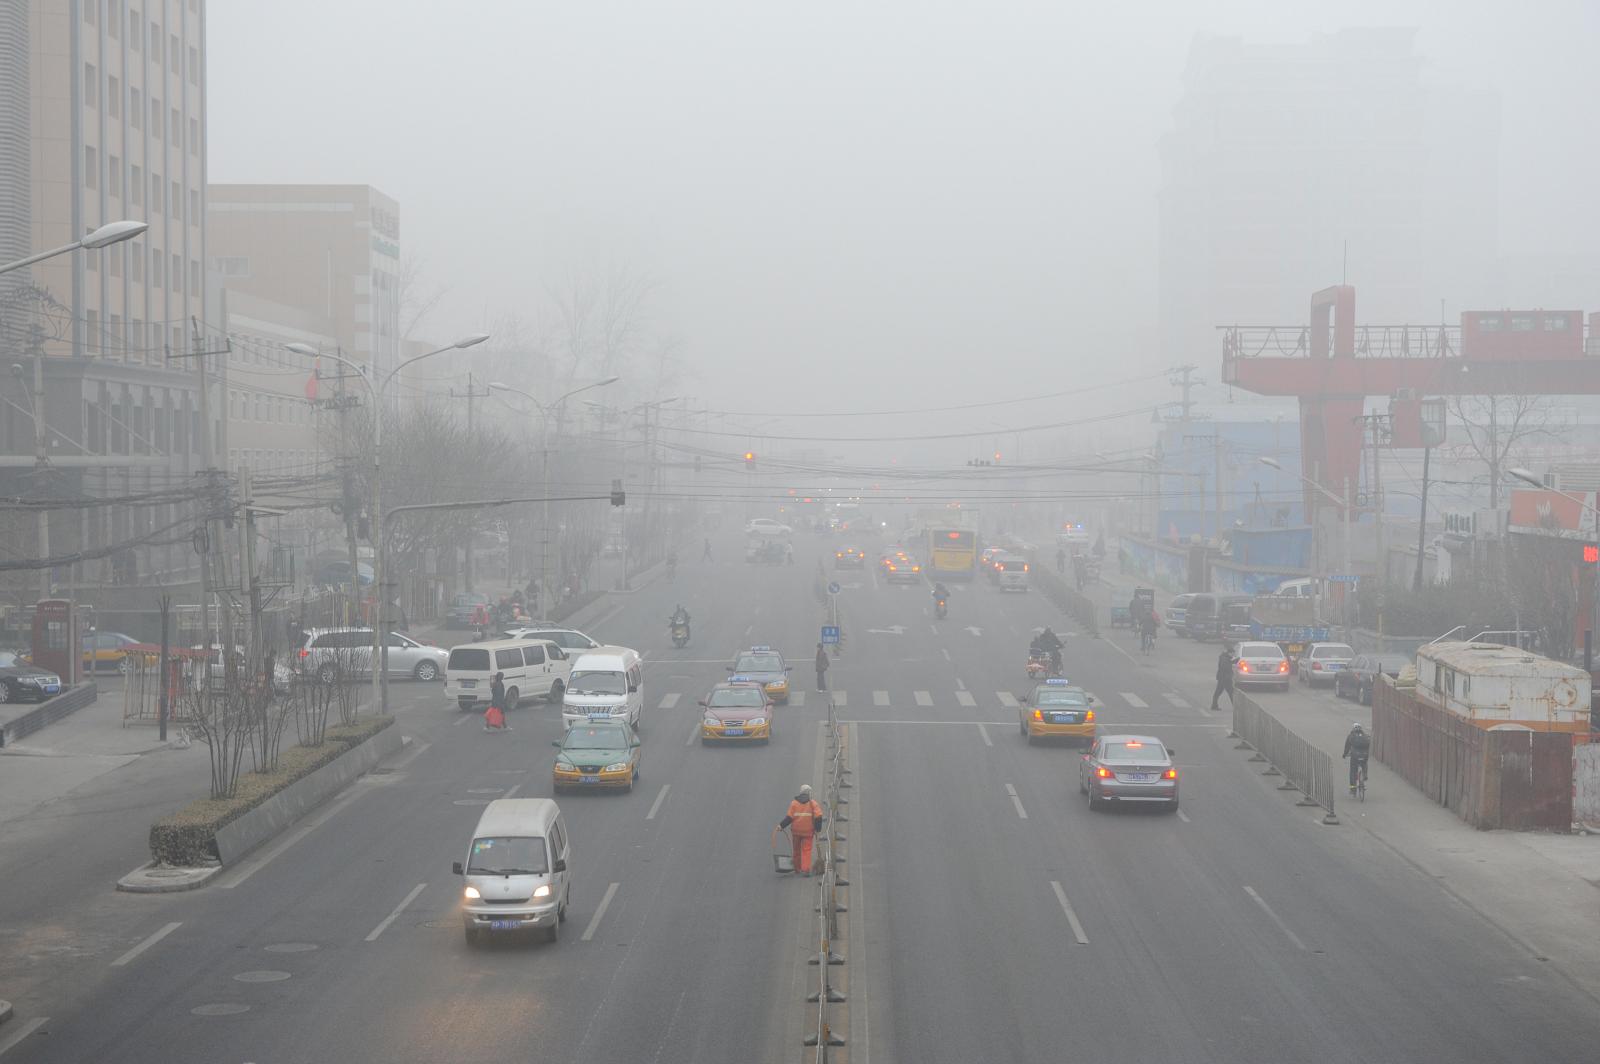 Xe cộ, các tòa nhà cao tầng, cảnh thành phố mờ ảo vì khói bụi ô nhiễm